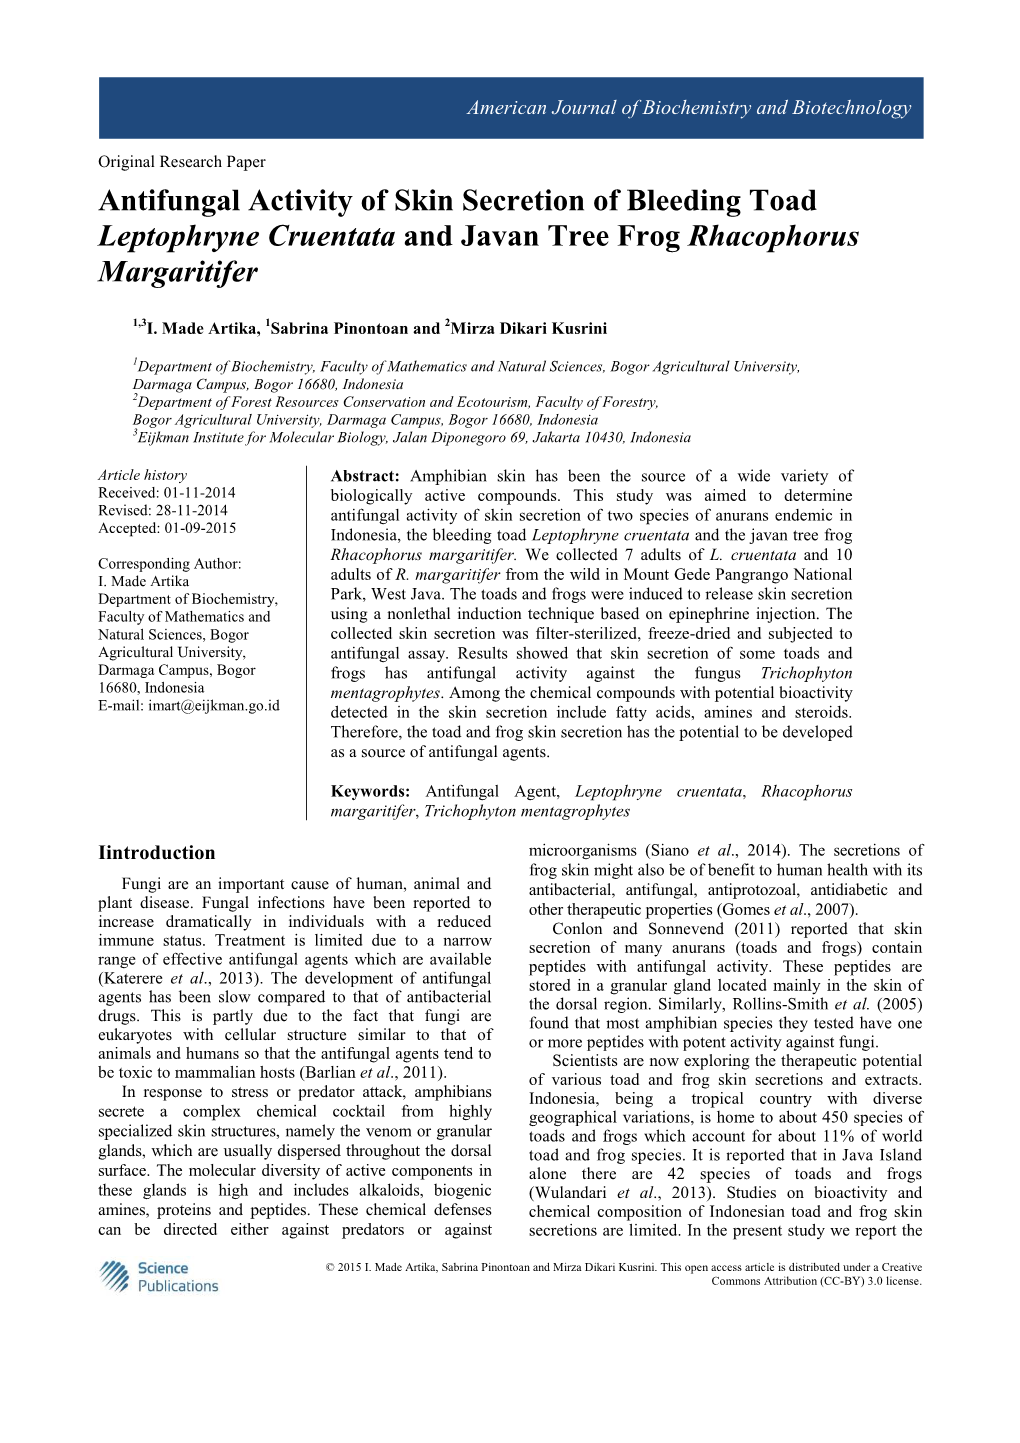 Antifungal Activity of Skin Secretion of Bleeding Toad Leptophryne Cruentata and Javan Tree Frog Rhacophorus Margaritifer